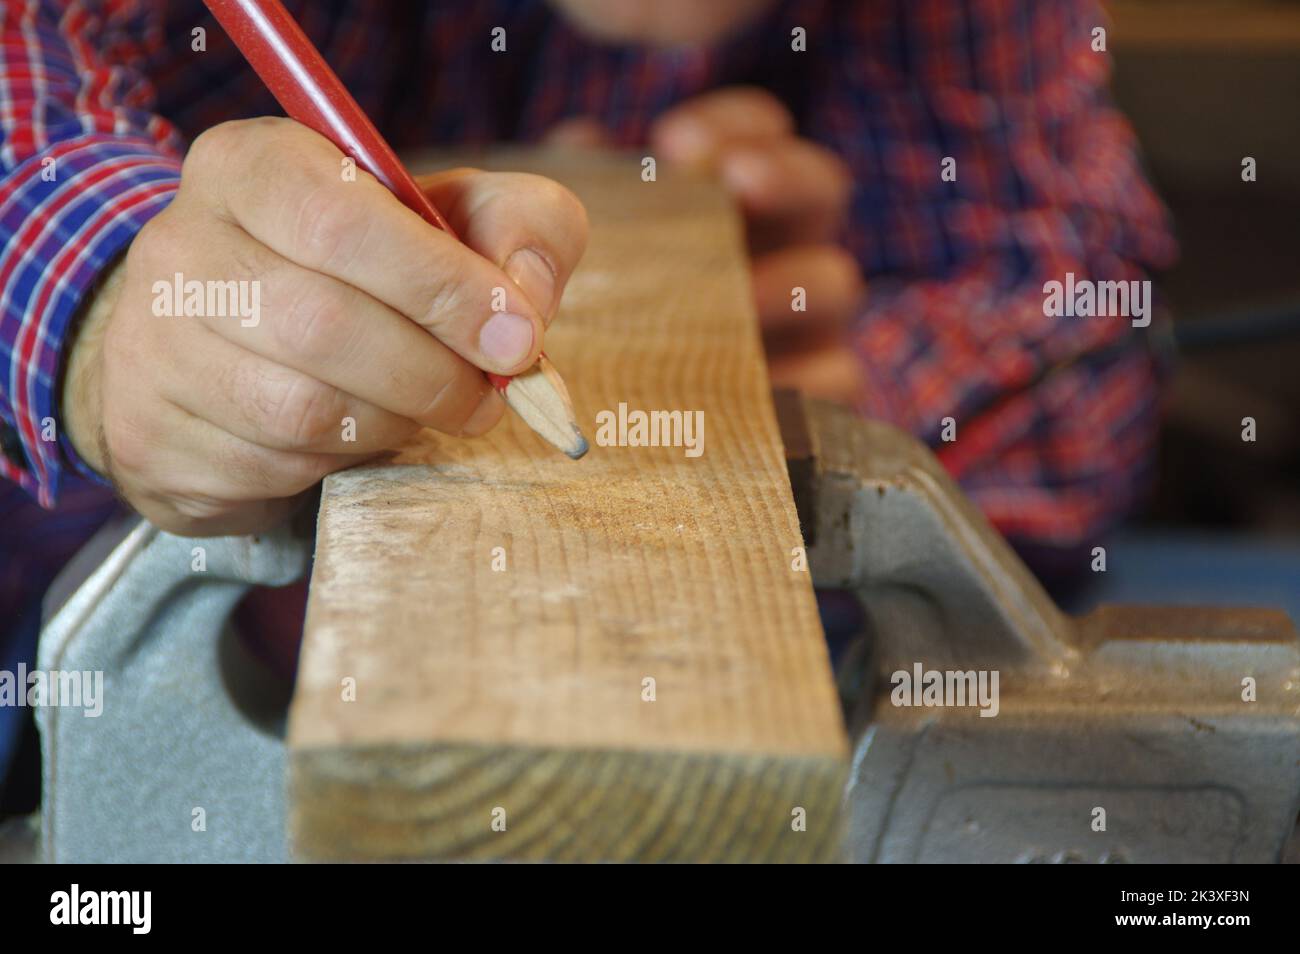 Dans l'atelier, Carpenter prépare une planche à découper brute. Menuisier dans l'atelier de menuiserie. Un expert en profondeur et un artisan attentif se sont concentrés sur le travail. Banque D'Images